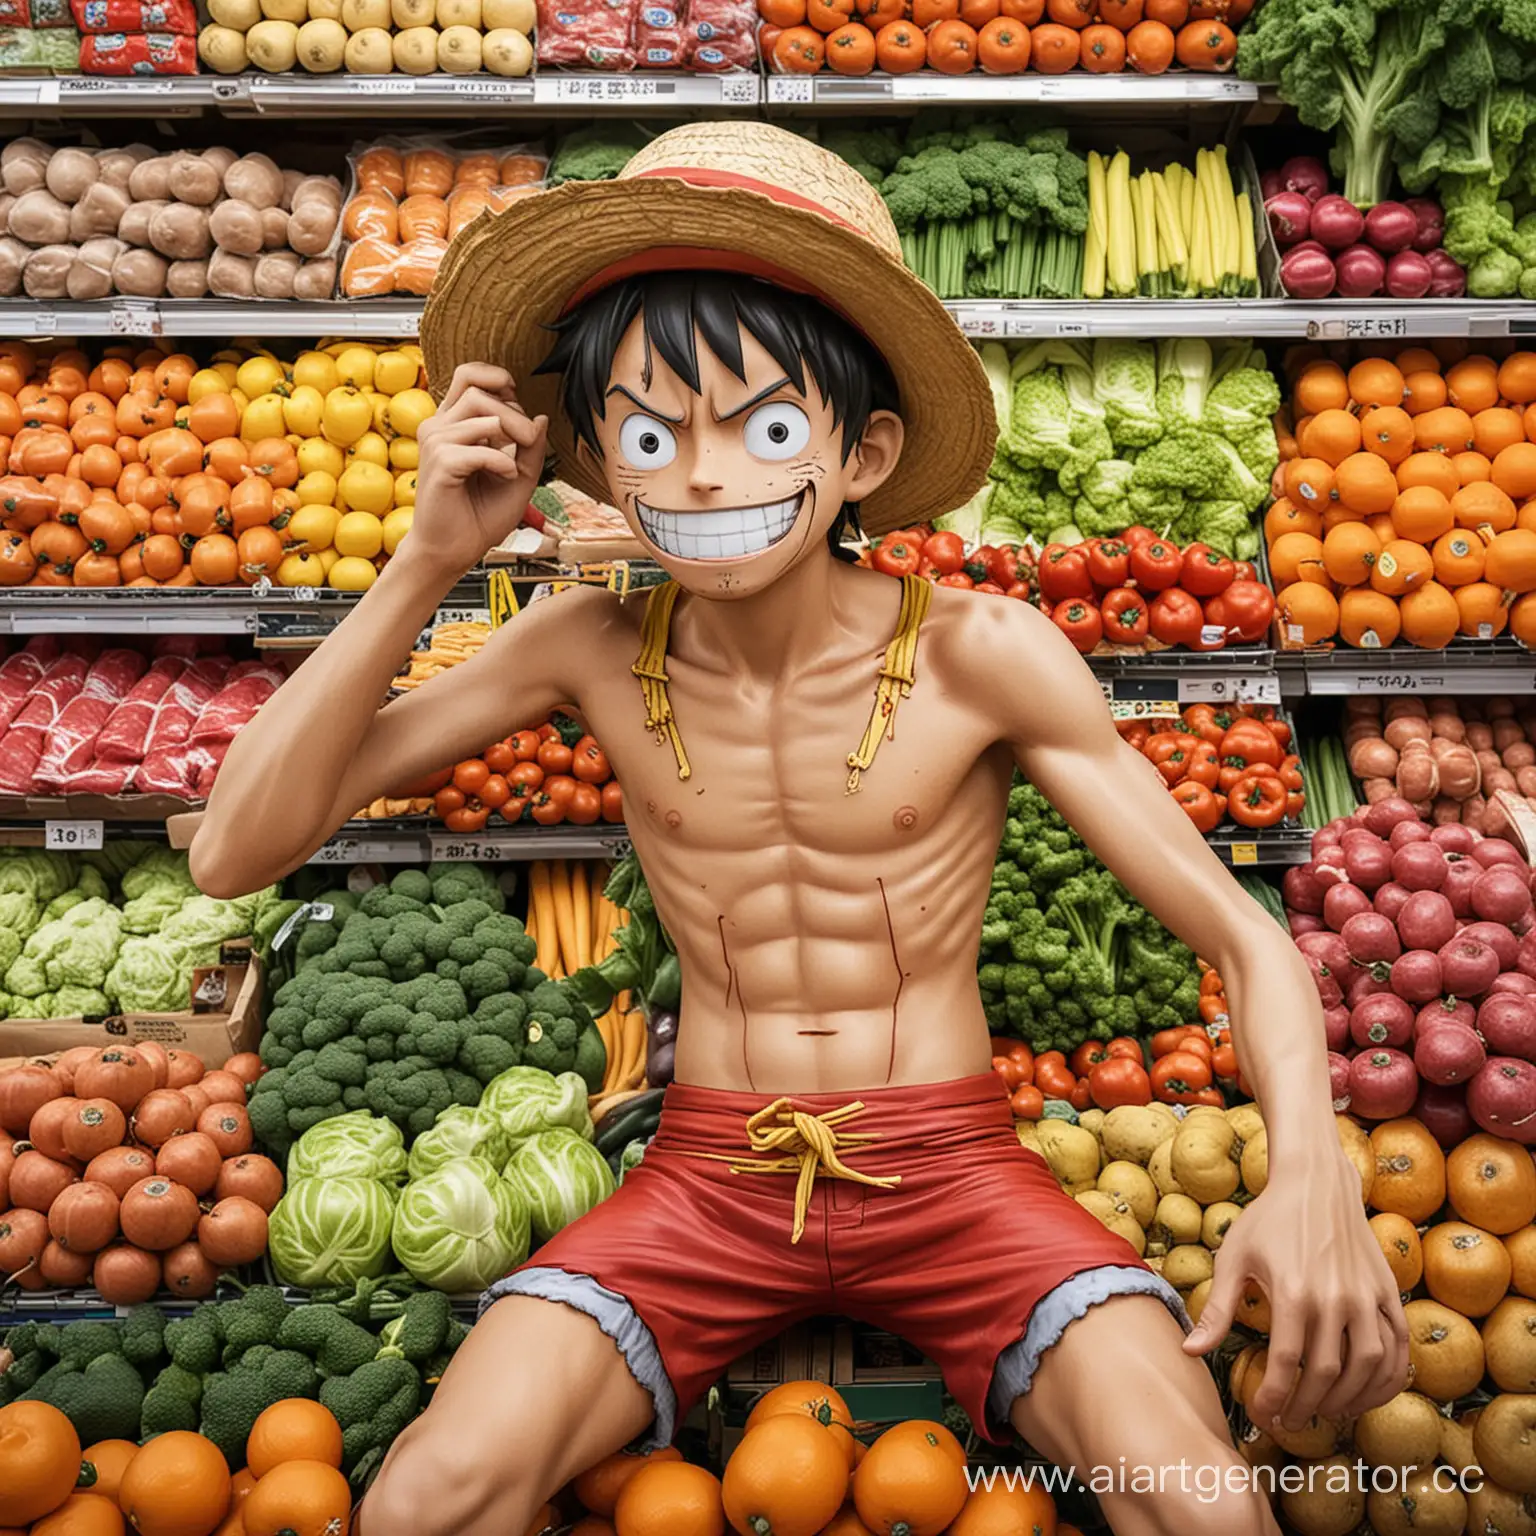 Монки Д Луффи, главной герой аниме Ван Пис, лежит в магазине на продуктах : овощи, полуфабрикаты, фрукты, мясо